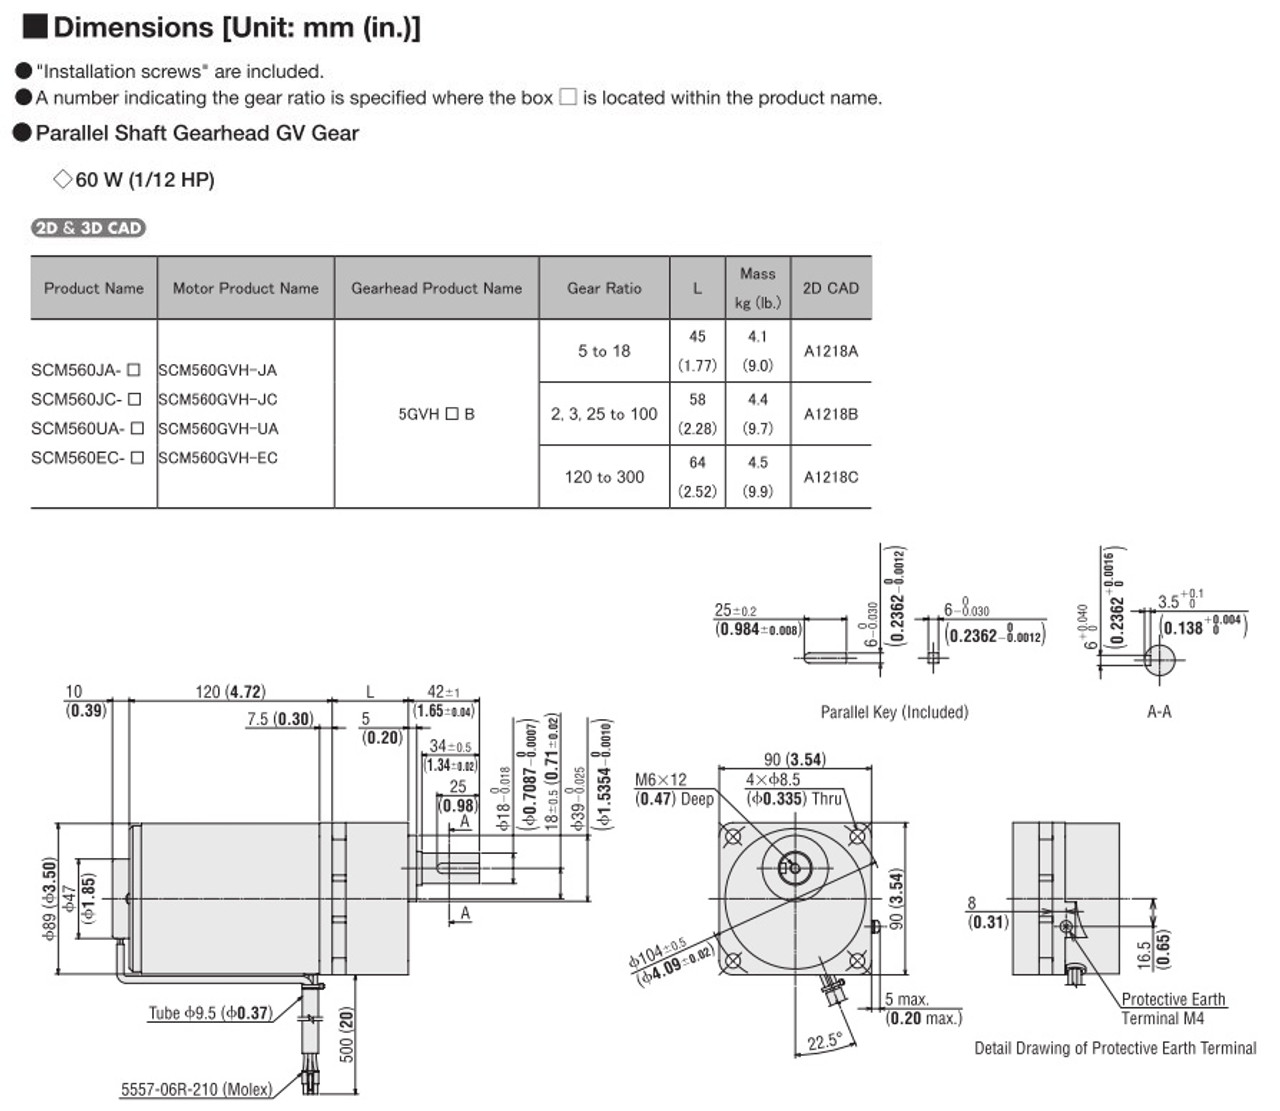 SCM560EC-5 - Dimensions